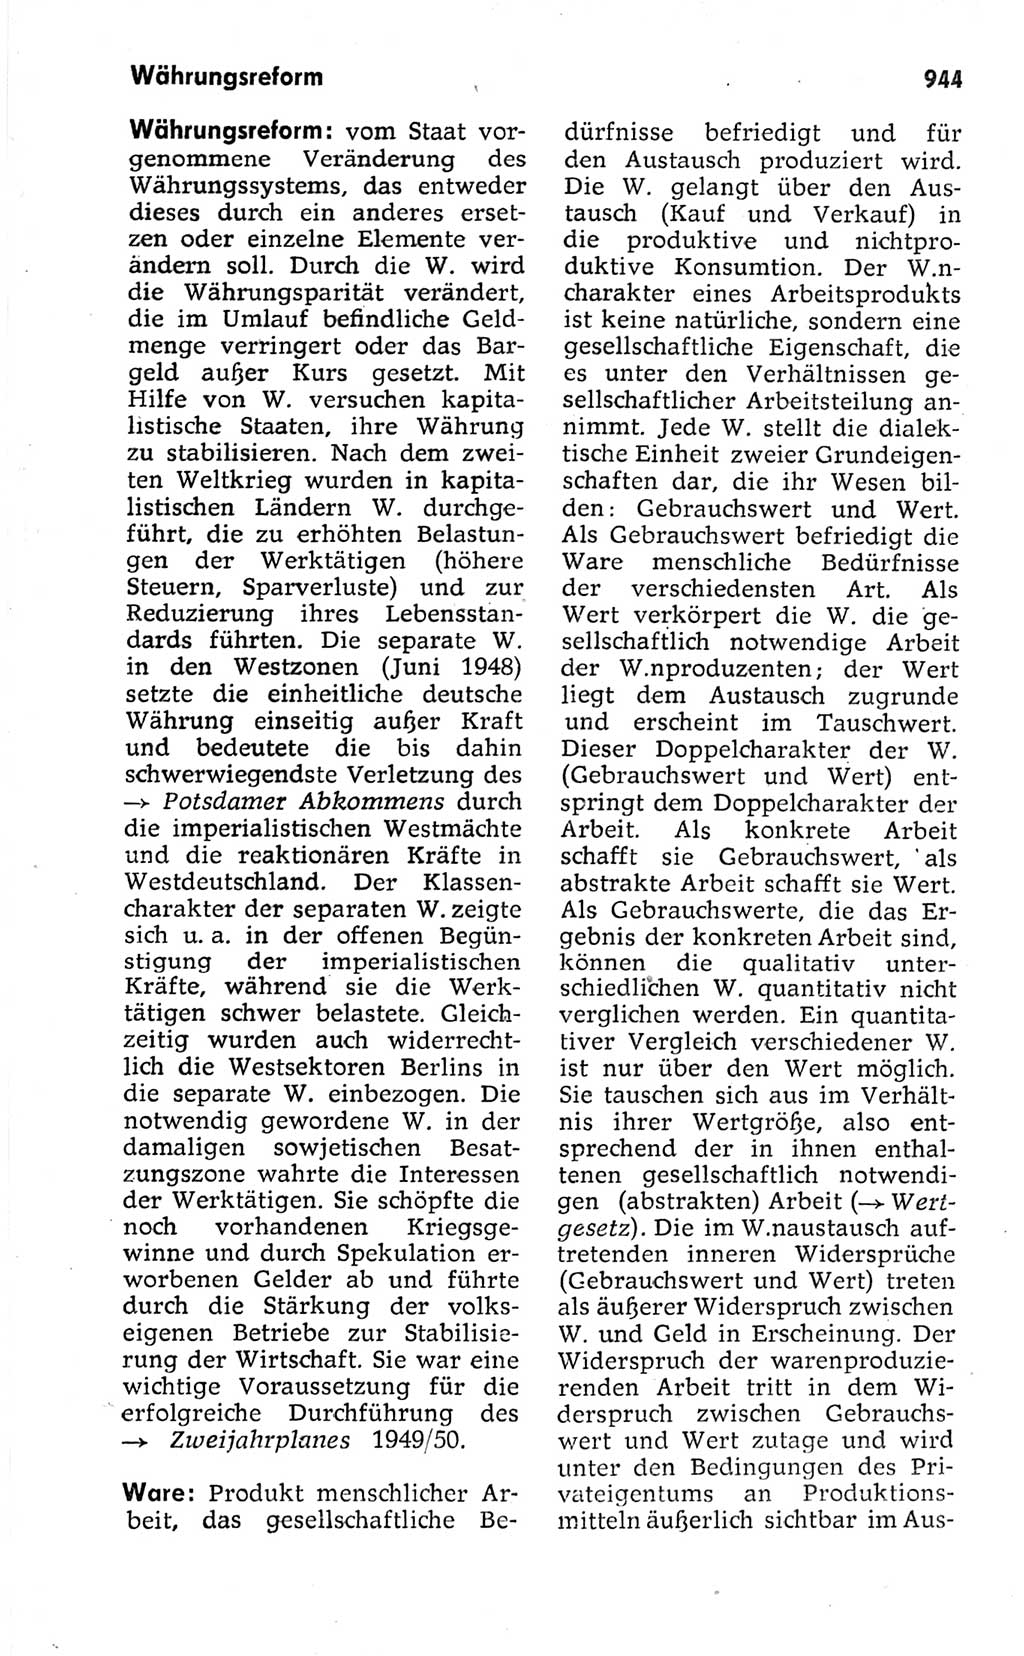 Kleines politisches Wörterbuch [Deutsche Demokratische Republik (DDR)] 1973, Seite 944 (Kl. pol. Wb. DDR 1973, S. 944)